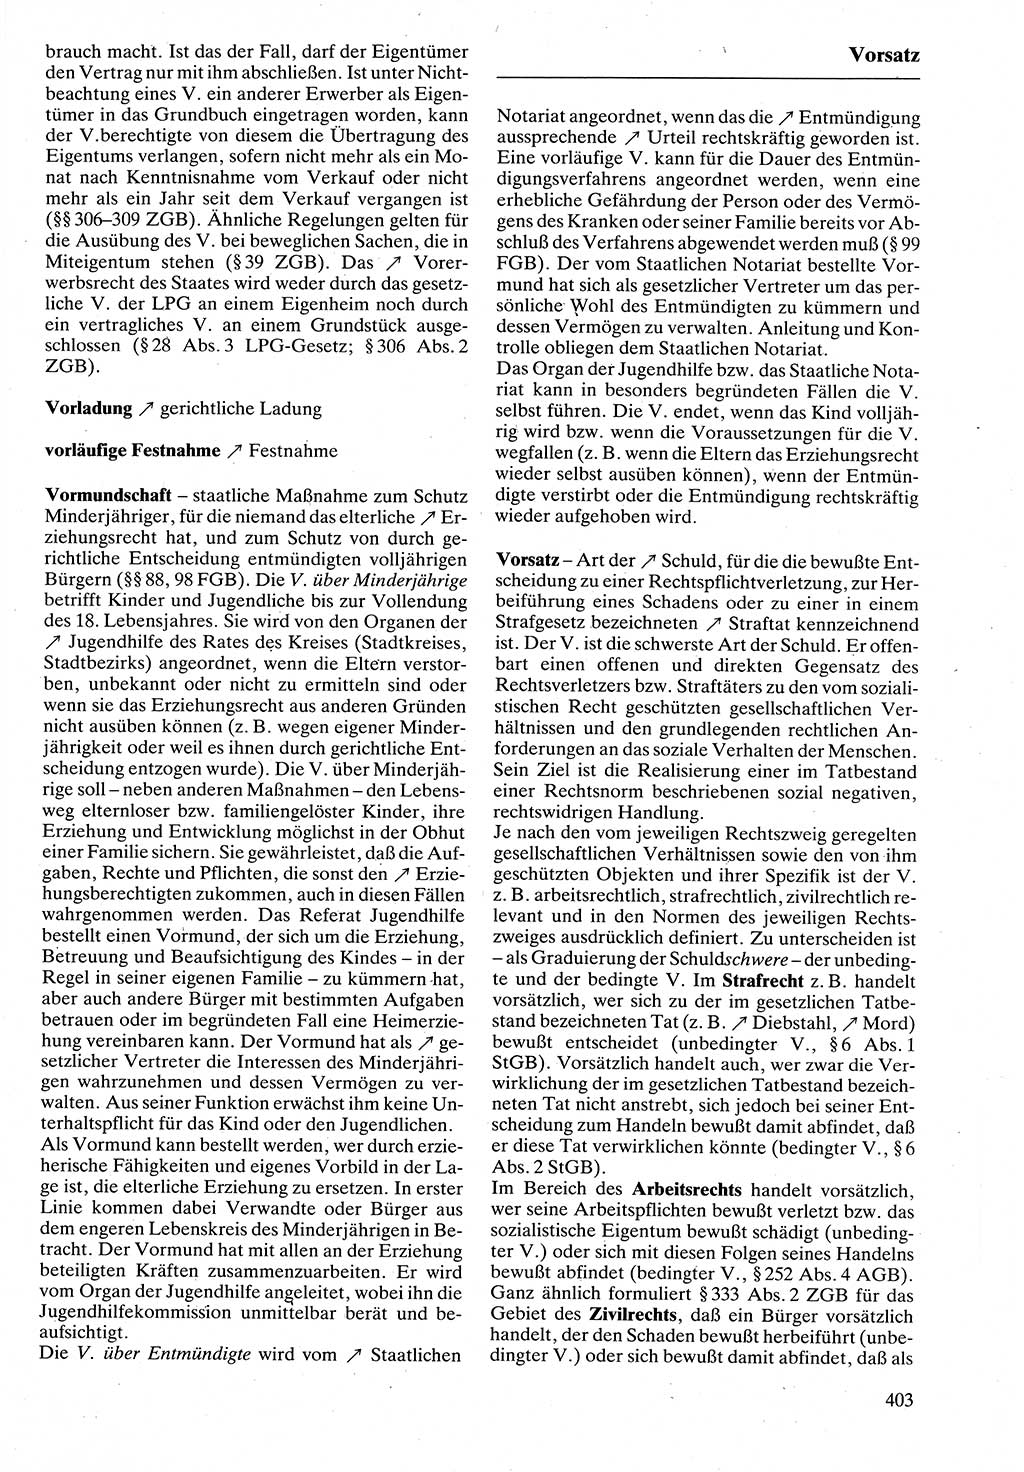 Rechtslexikon [Deutsche Demokratische Republik (DDR)] 1988, Seite 403 (Rechtslex. DDR 1988, S. 403)